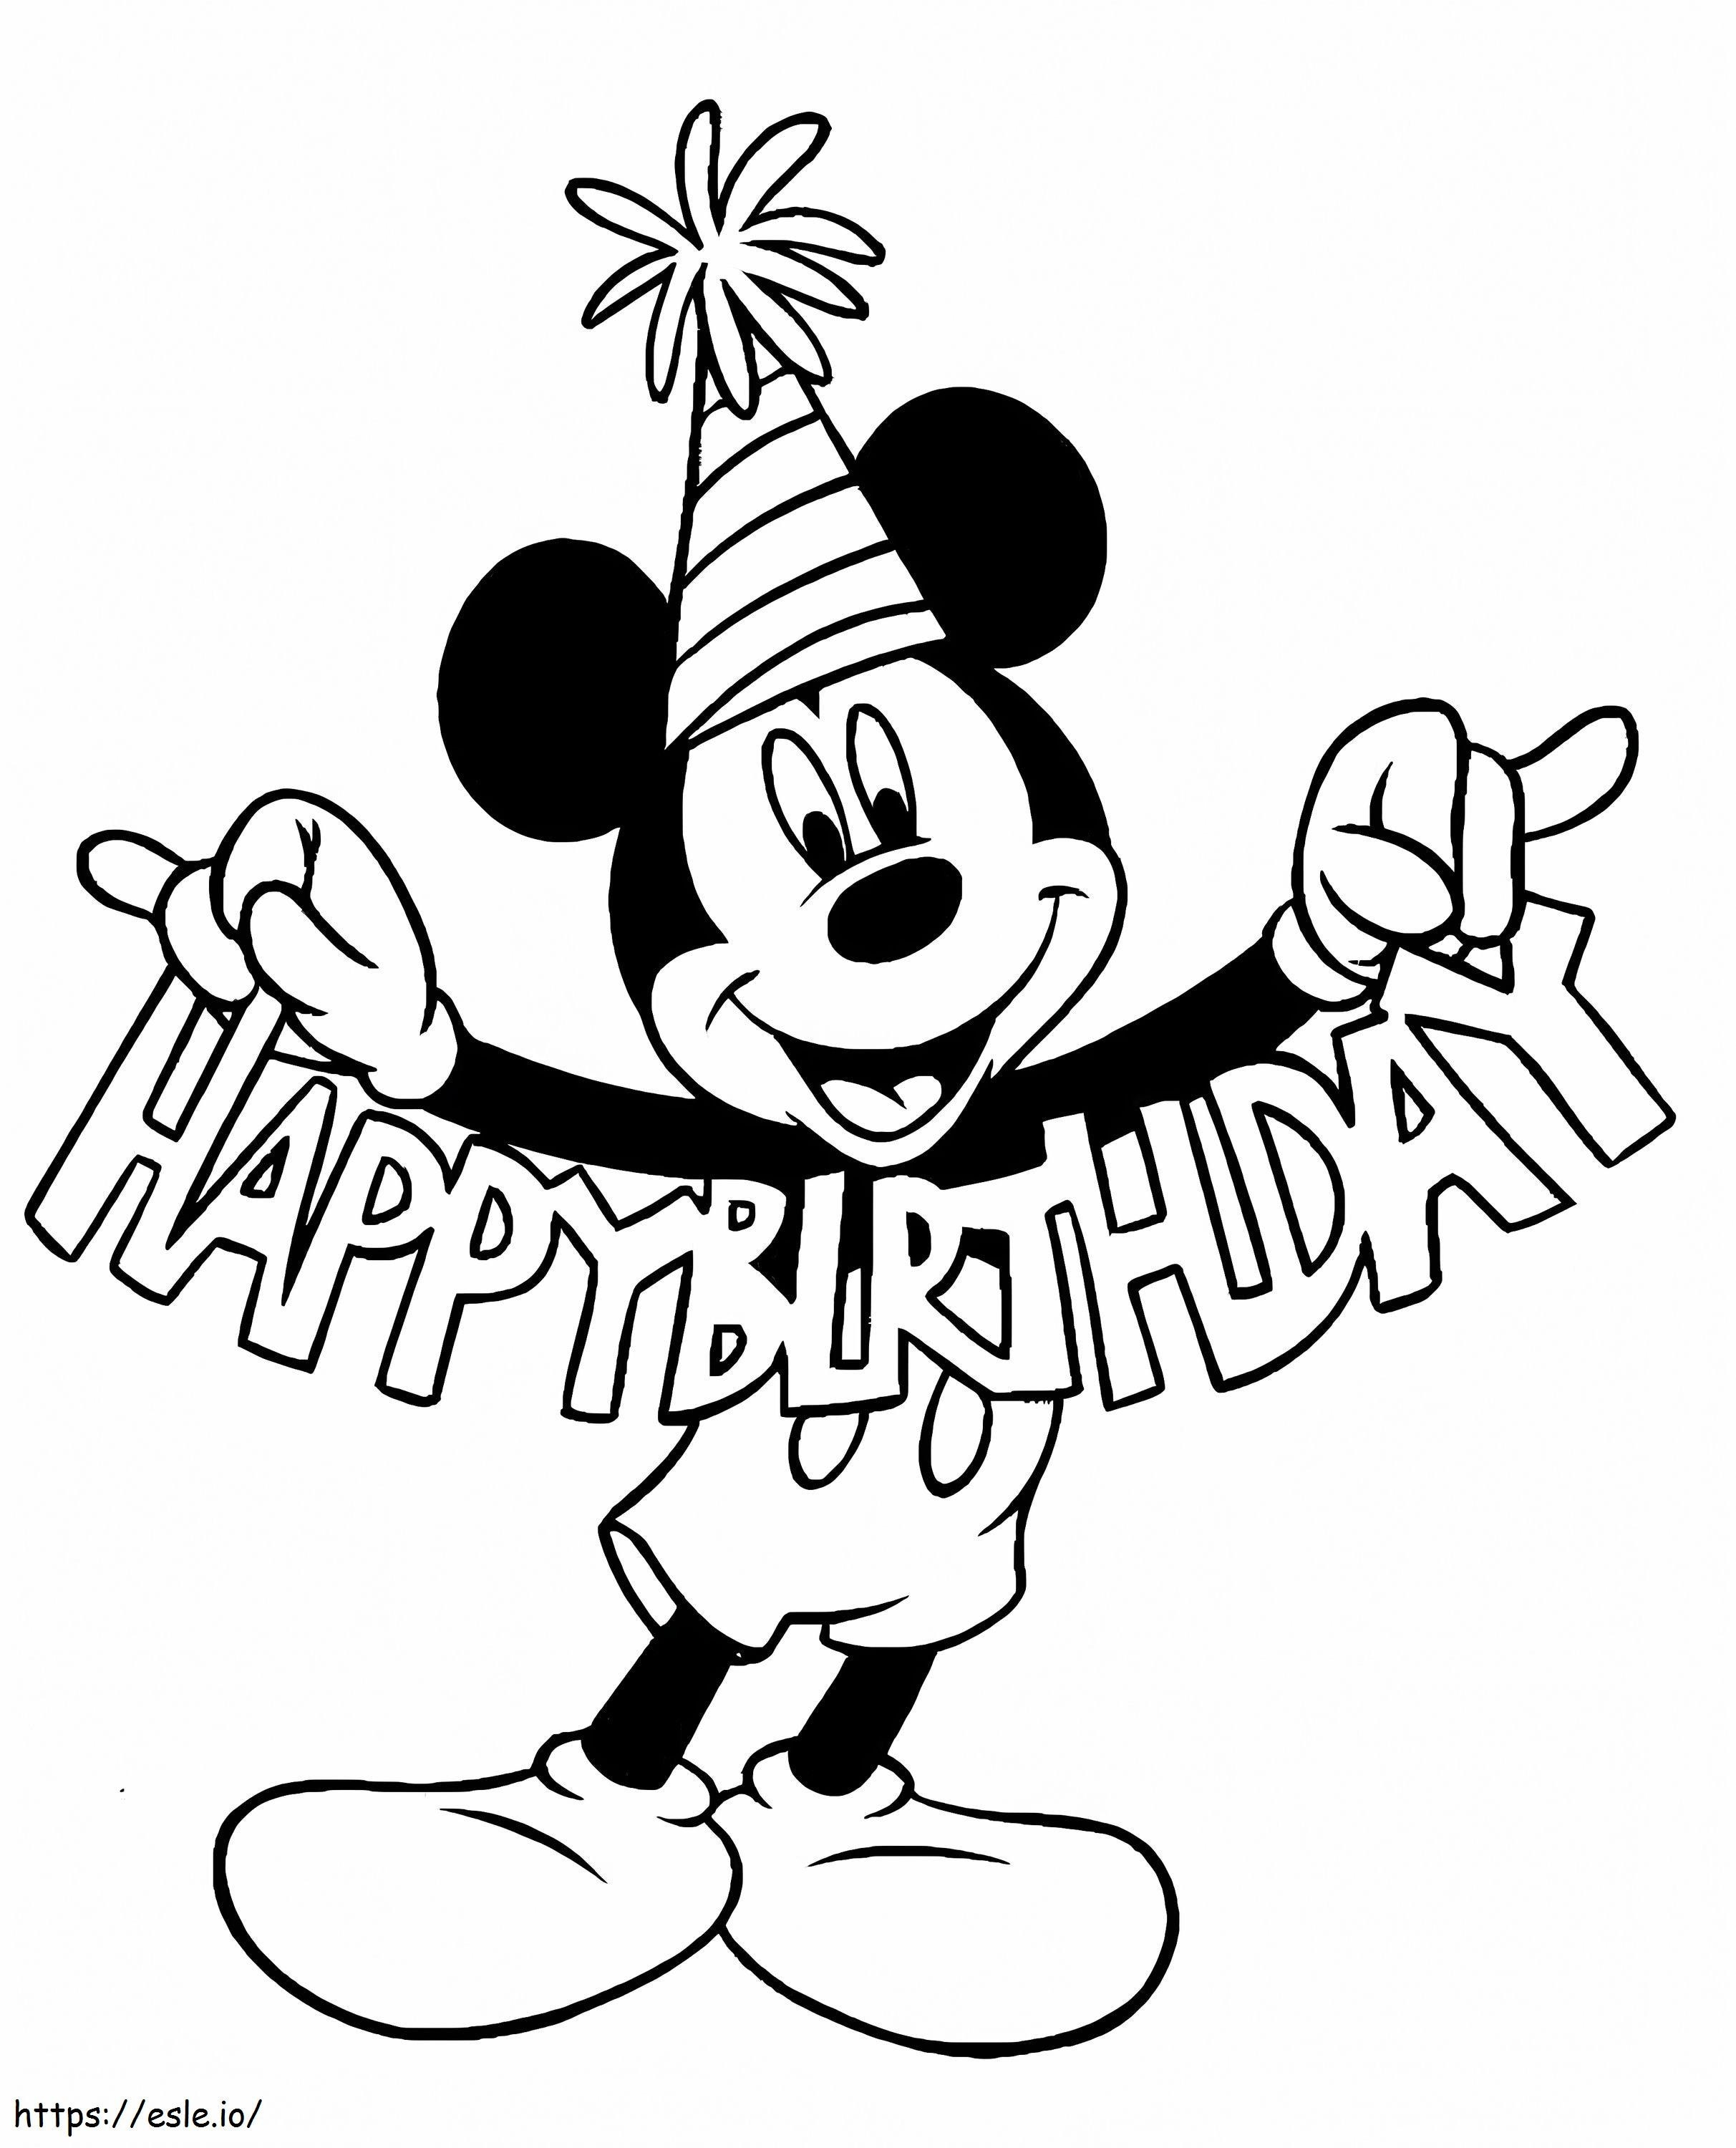 Mickey Mouse van harte gefeliciteerd met je verjaardag kleurplaat kleurplaat